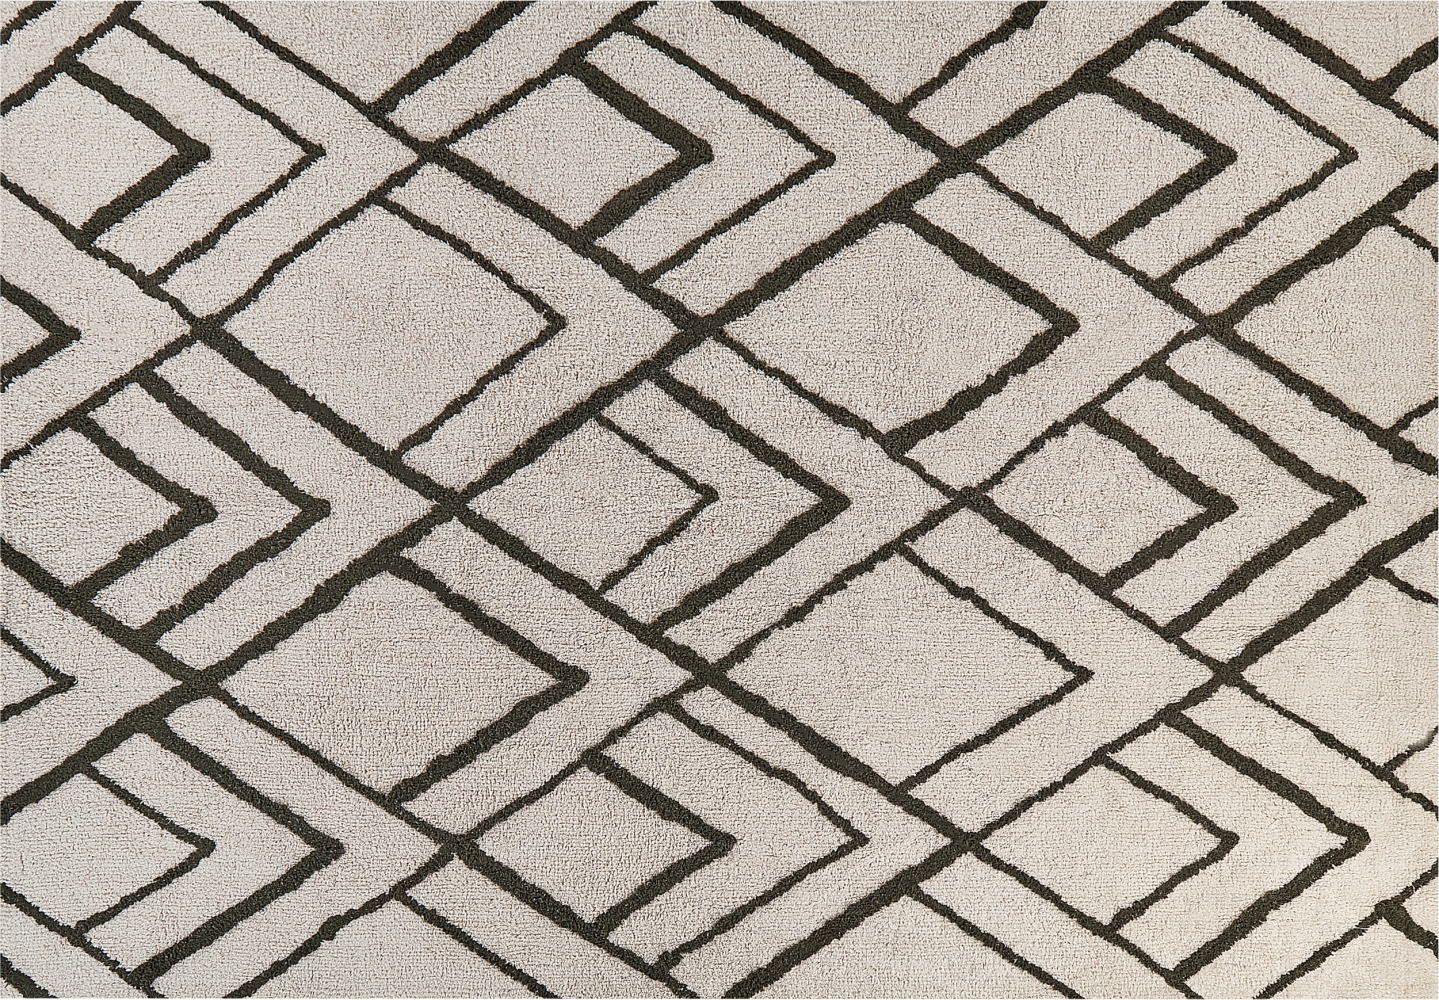 Teppich Baumwolle cremeweiß grün geometrisches Muster 160 x 230 cm Shaggy YESILKOY Bild 1